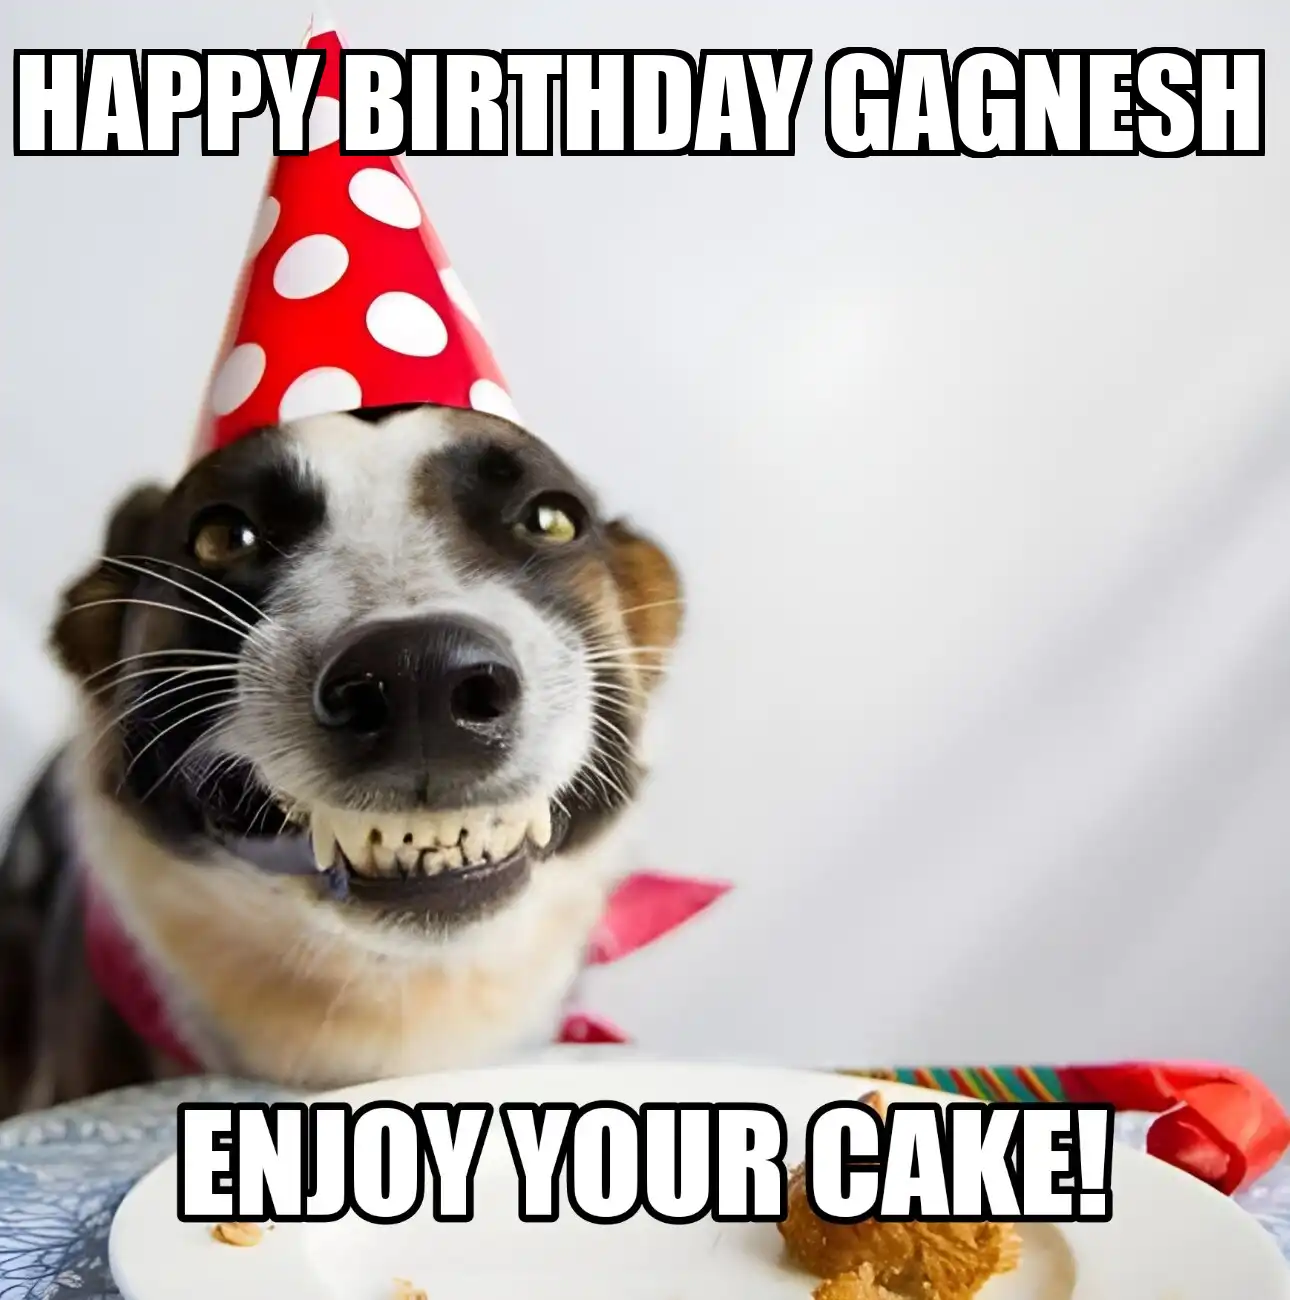 Happy Birthday Gagnesh Enjoy Your Cake Dog Meme